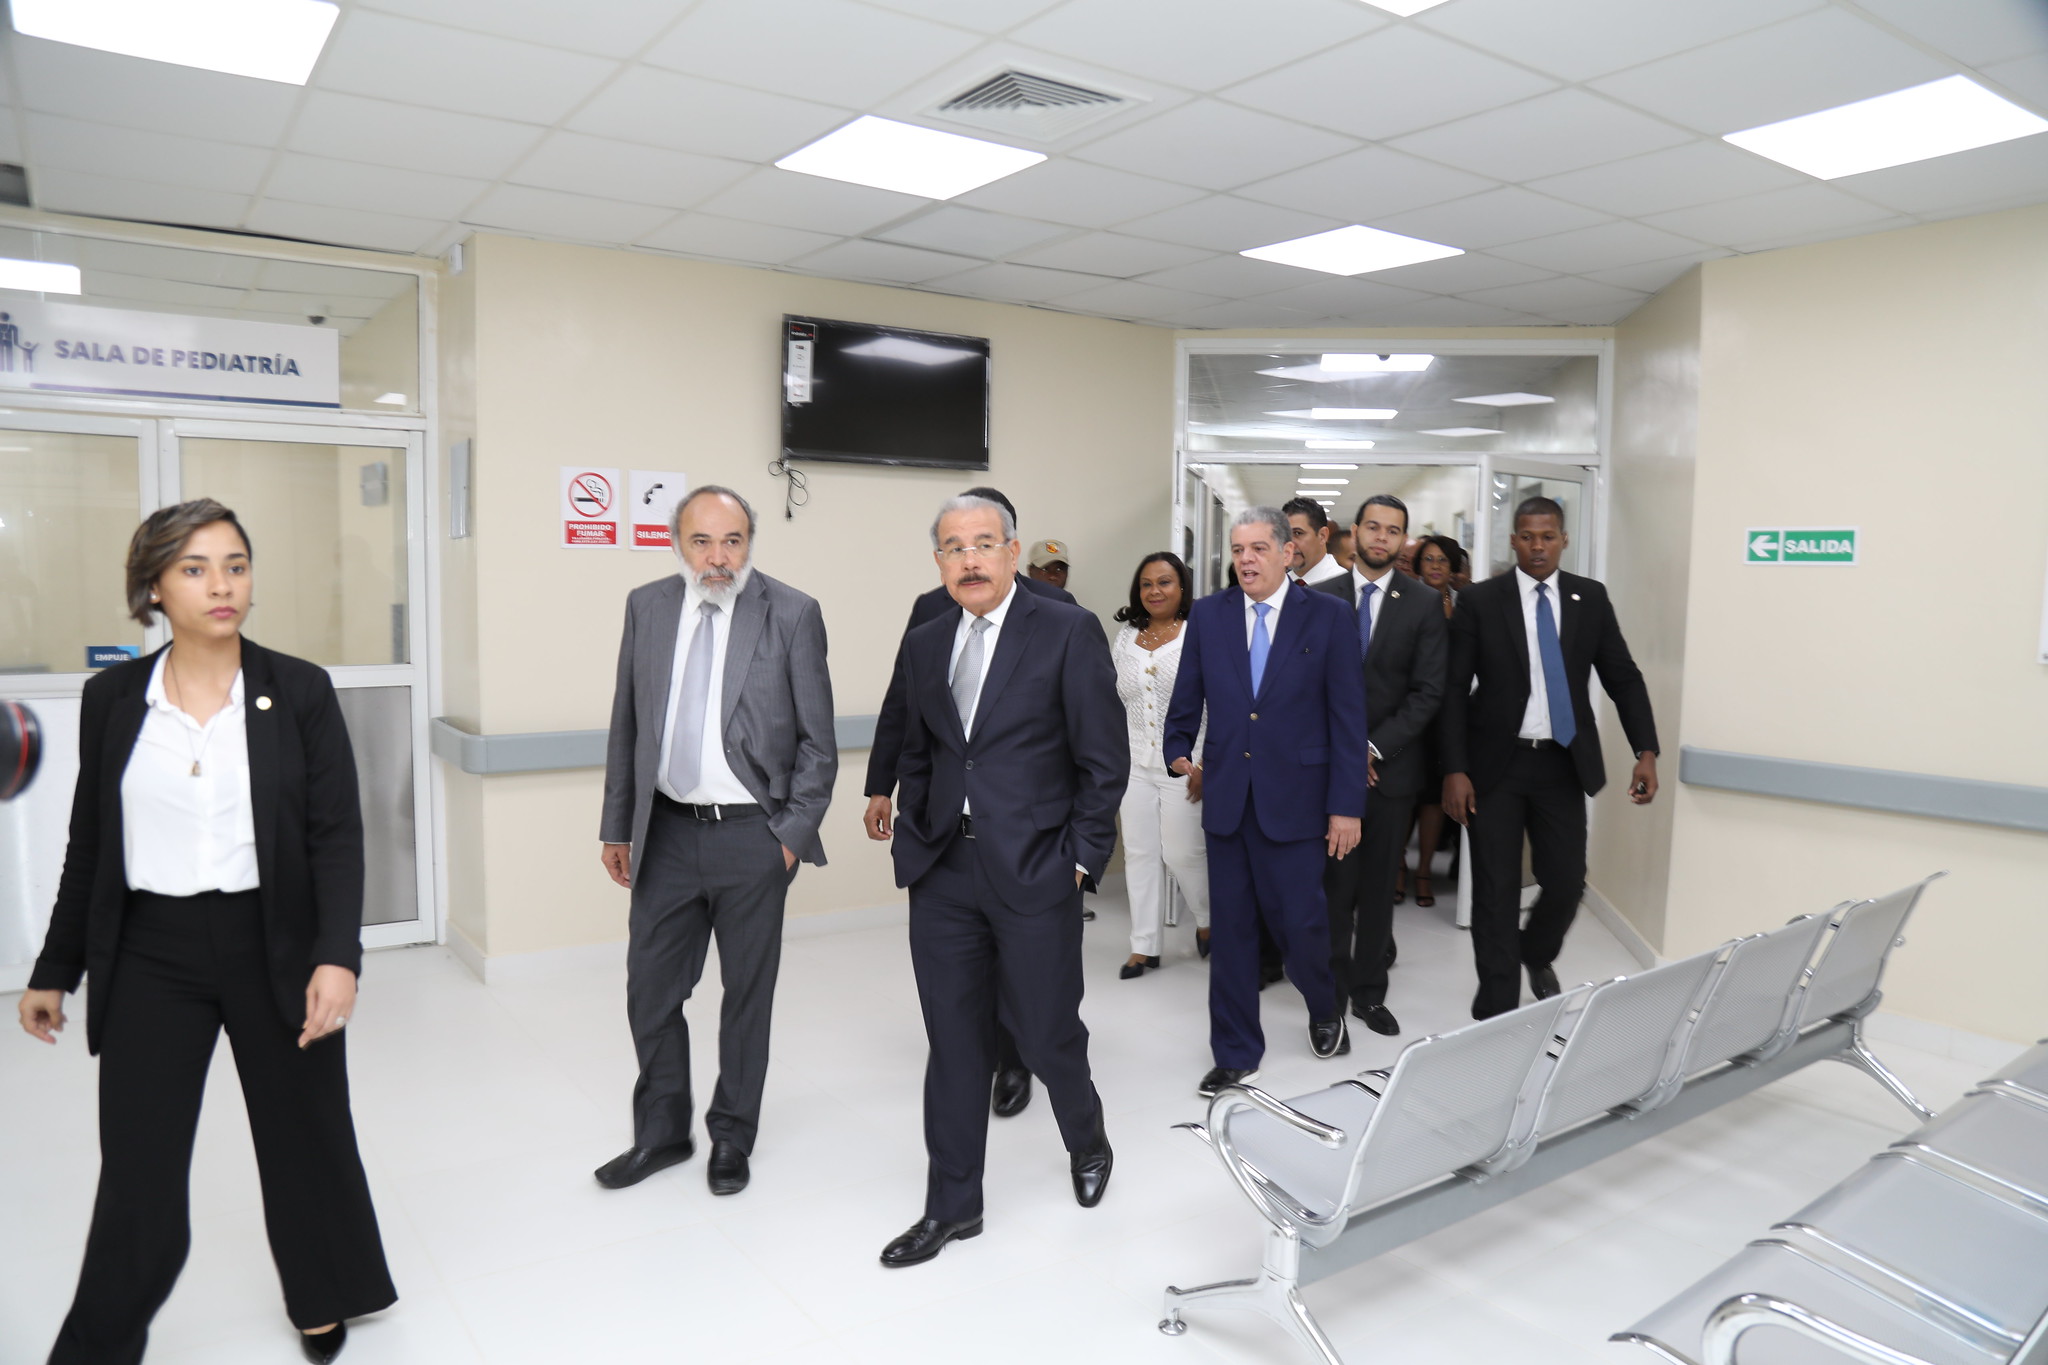 Presidente entrega Hospital Doctor Toribio Bencosme, en Moca. Asciende a 41 total centros de salud nuevos y reequipados en últimos 7 años